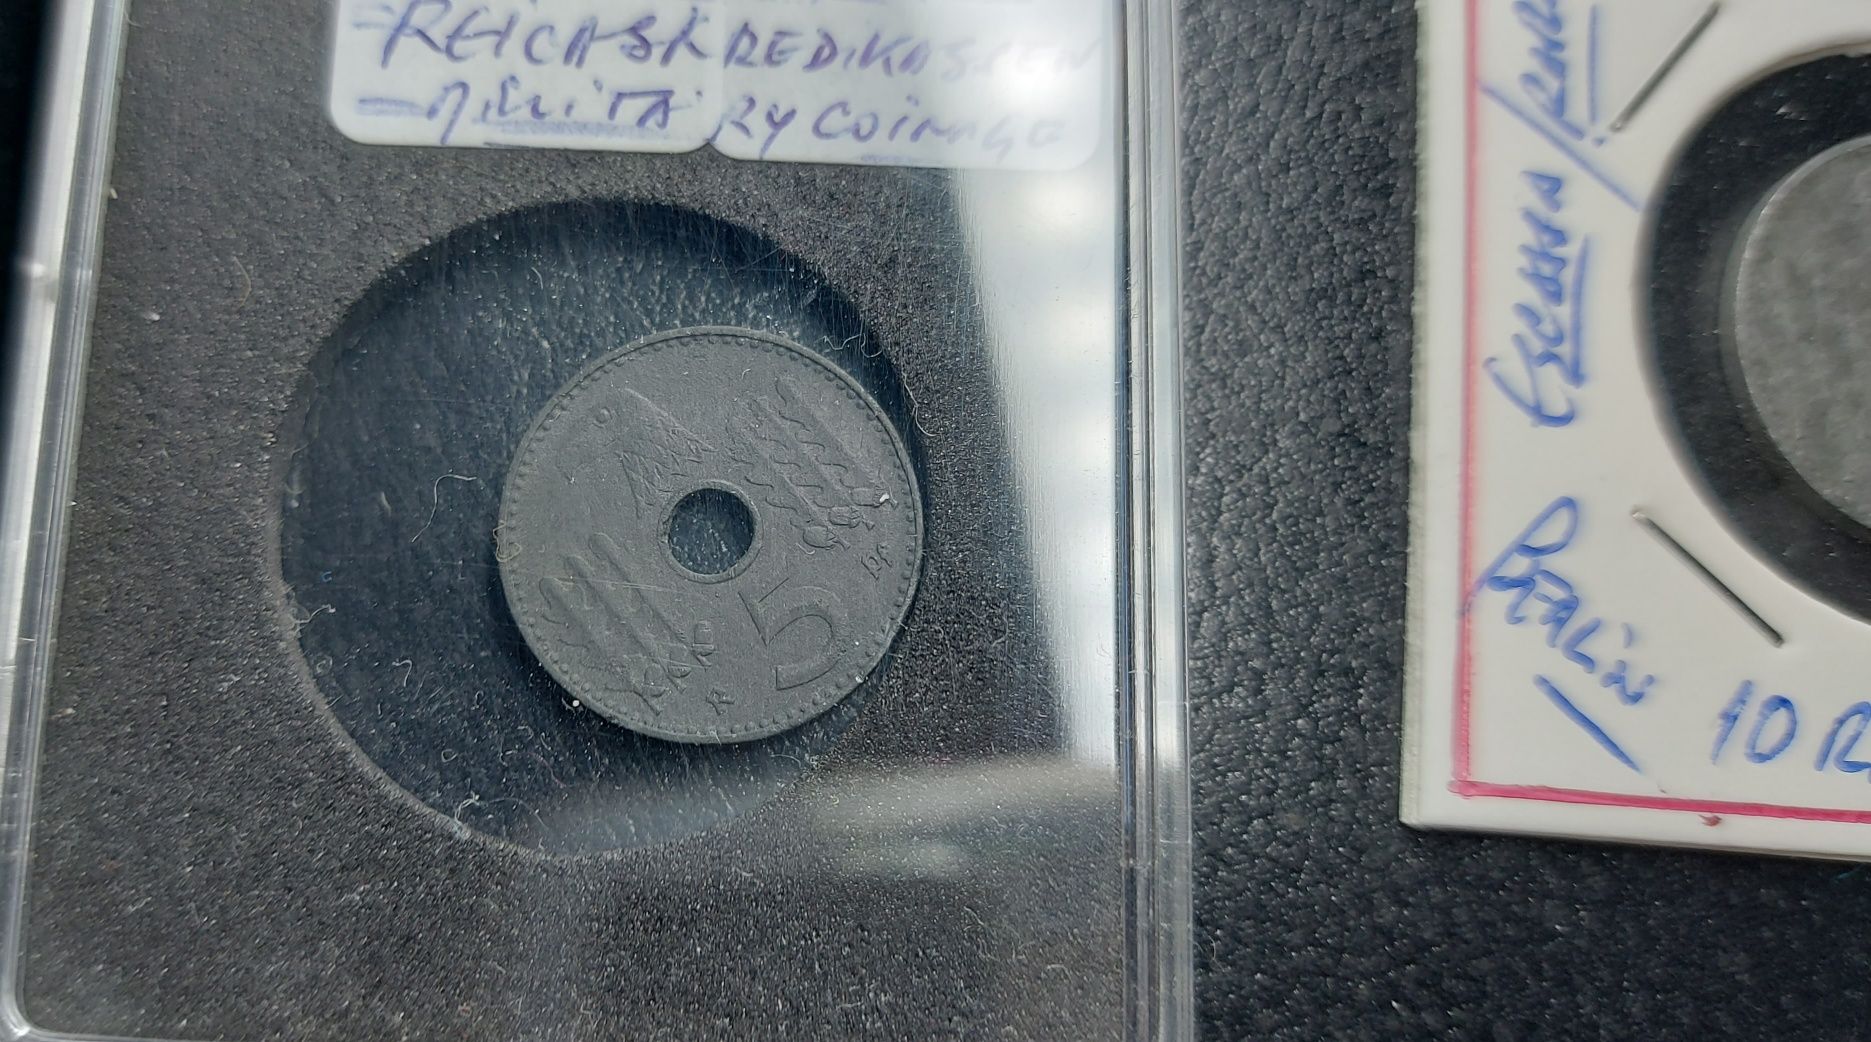 PROMOÇÃO--REICHSKREDITKASSEN military coinage RARA-Alemanha nazi suást